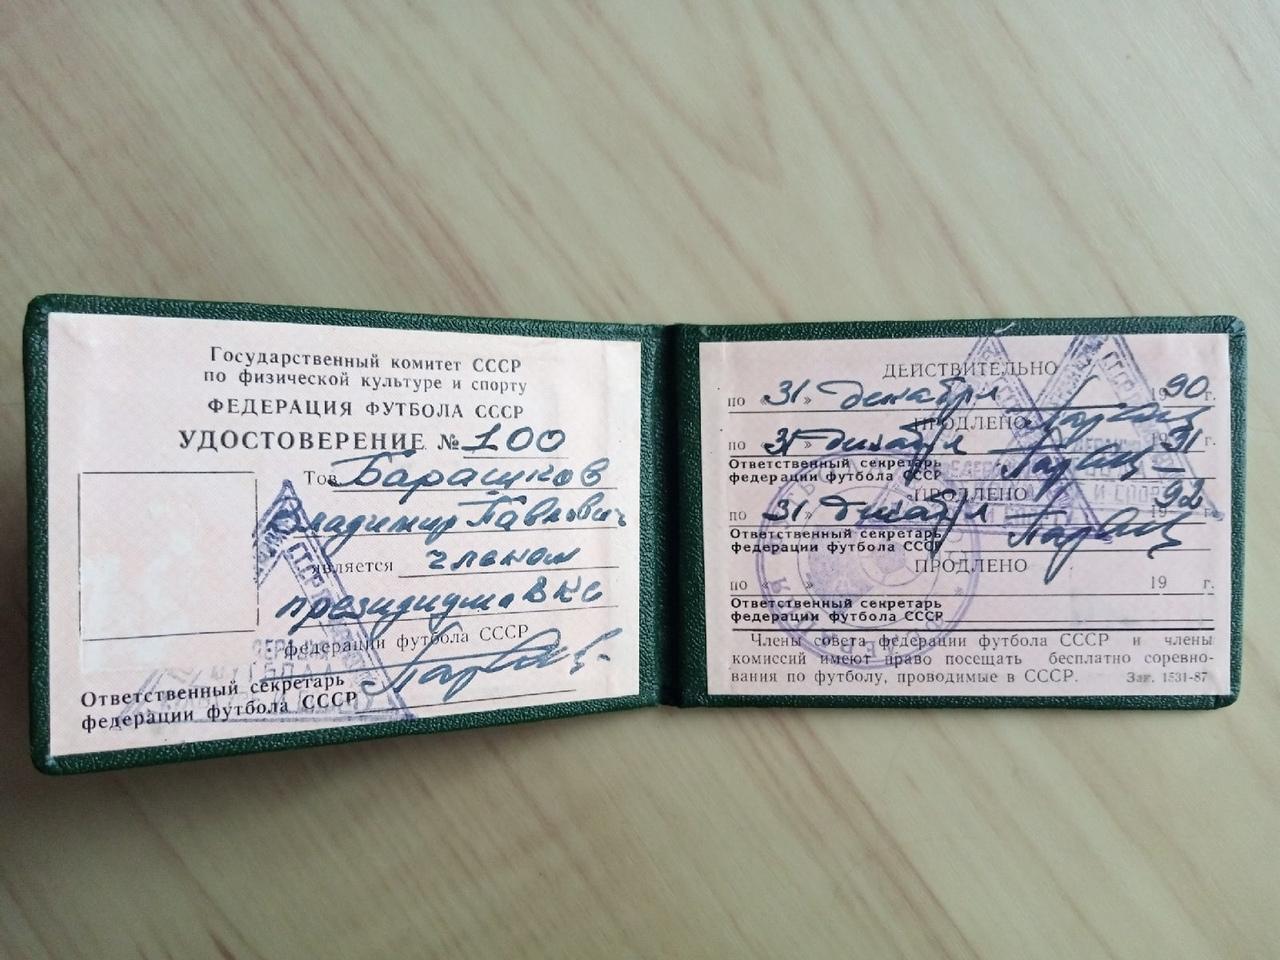 Удостоверение В. Барашкова, заполненное Алексеем Парамоновым, с его автографами 3